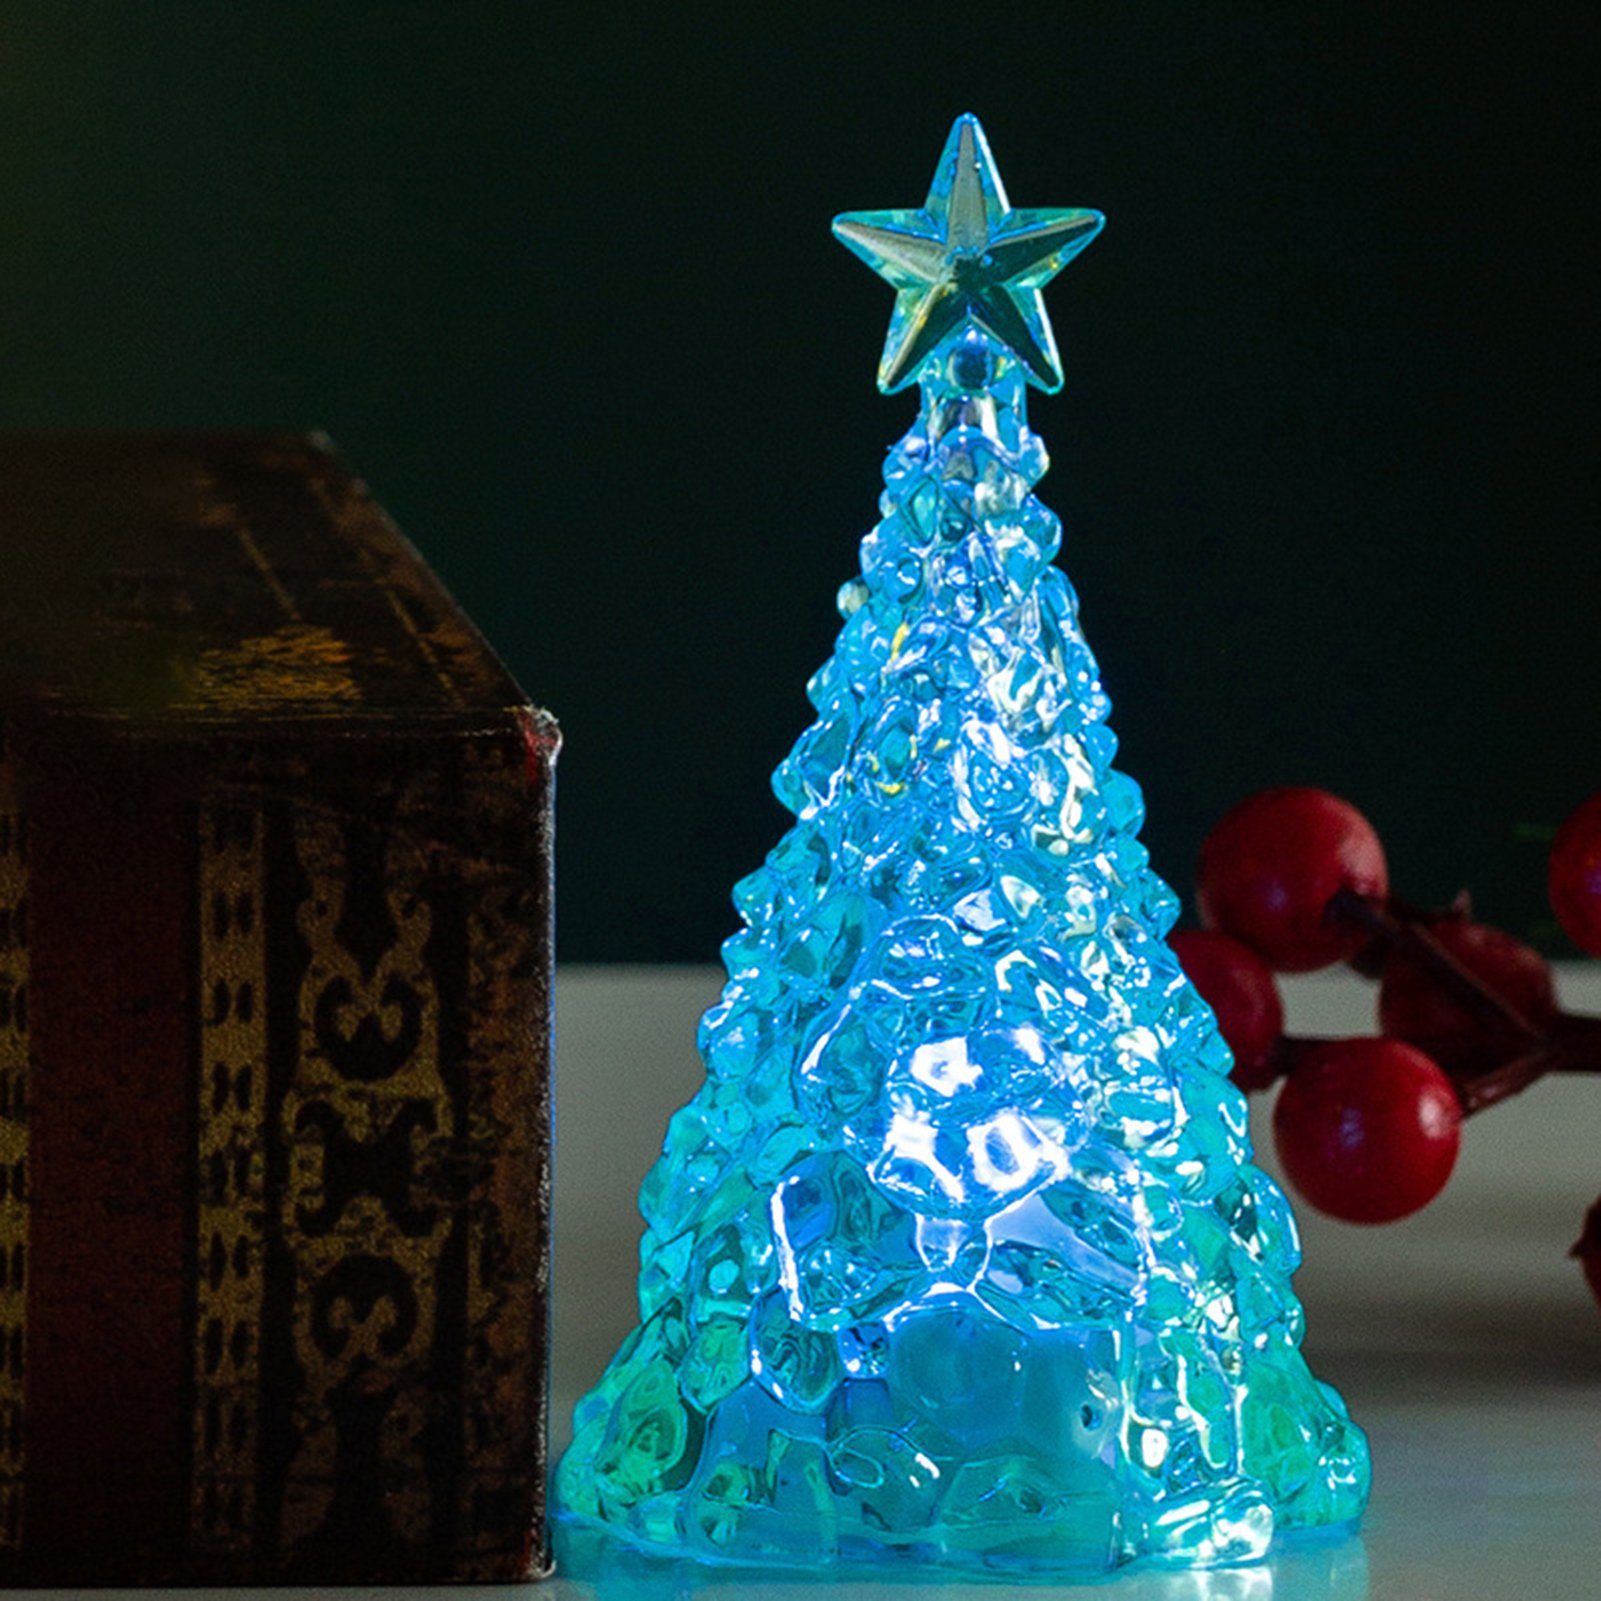 Rutaqian Nachtlicht Weihnachtsdekorationen Kristall LED Nachtlicht Weihnachtsbaum Ornament Desktop Kerzenlicht, Stück Heiligabend Geschenk LED Blau 4 Nachtlicht